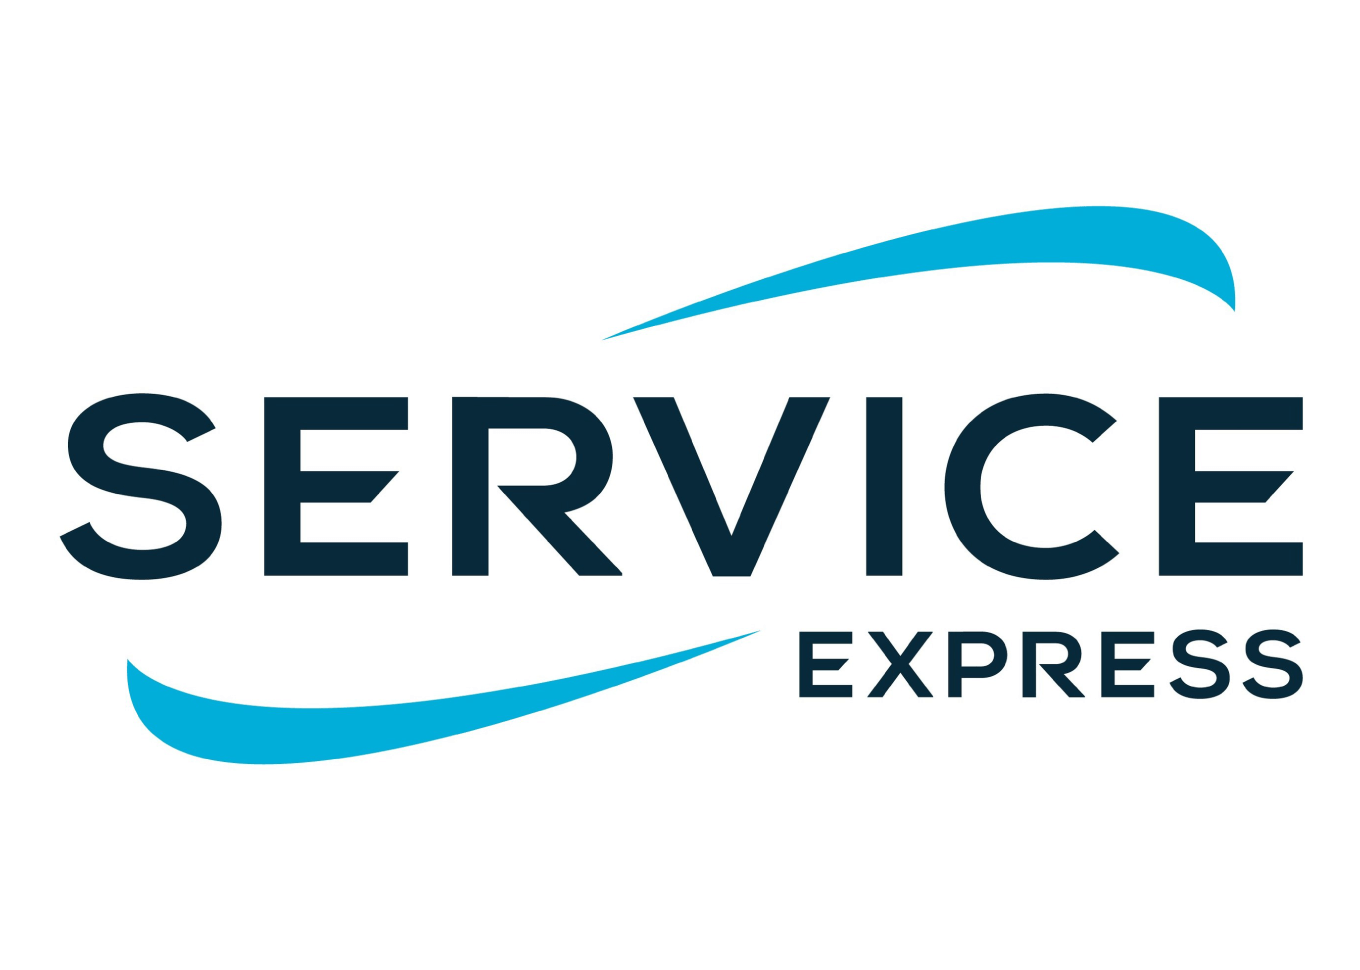 Service Express